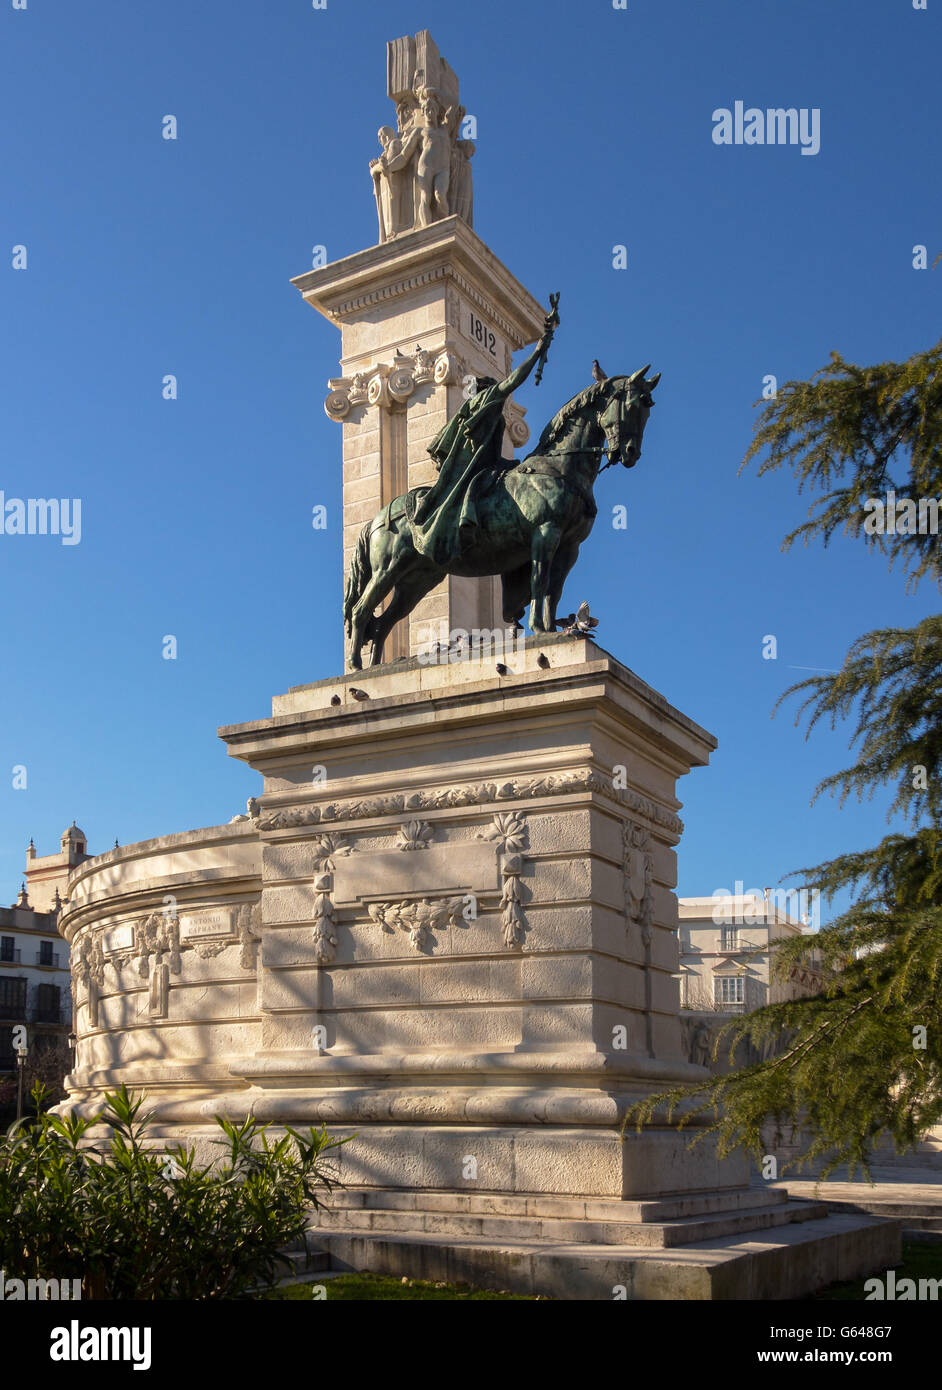 CADICE, SPAGNA - 13 MARZO 2016: Statua e monumento commemorativo della Costituzione spagnola del 1812 in Plaza de Espana Foto Stock